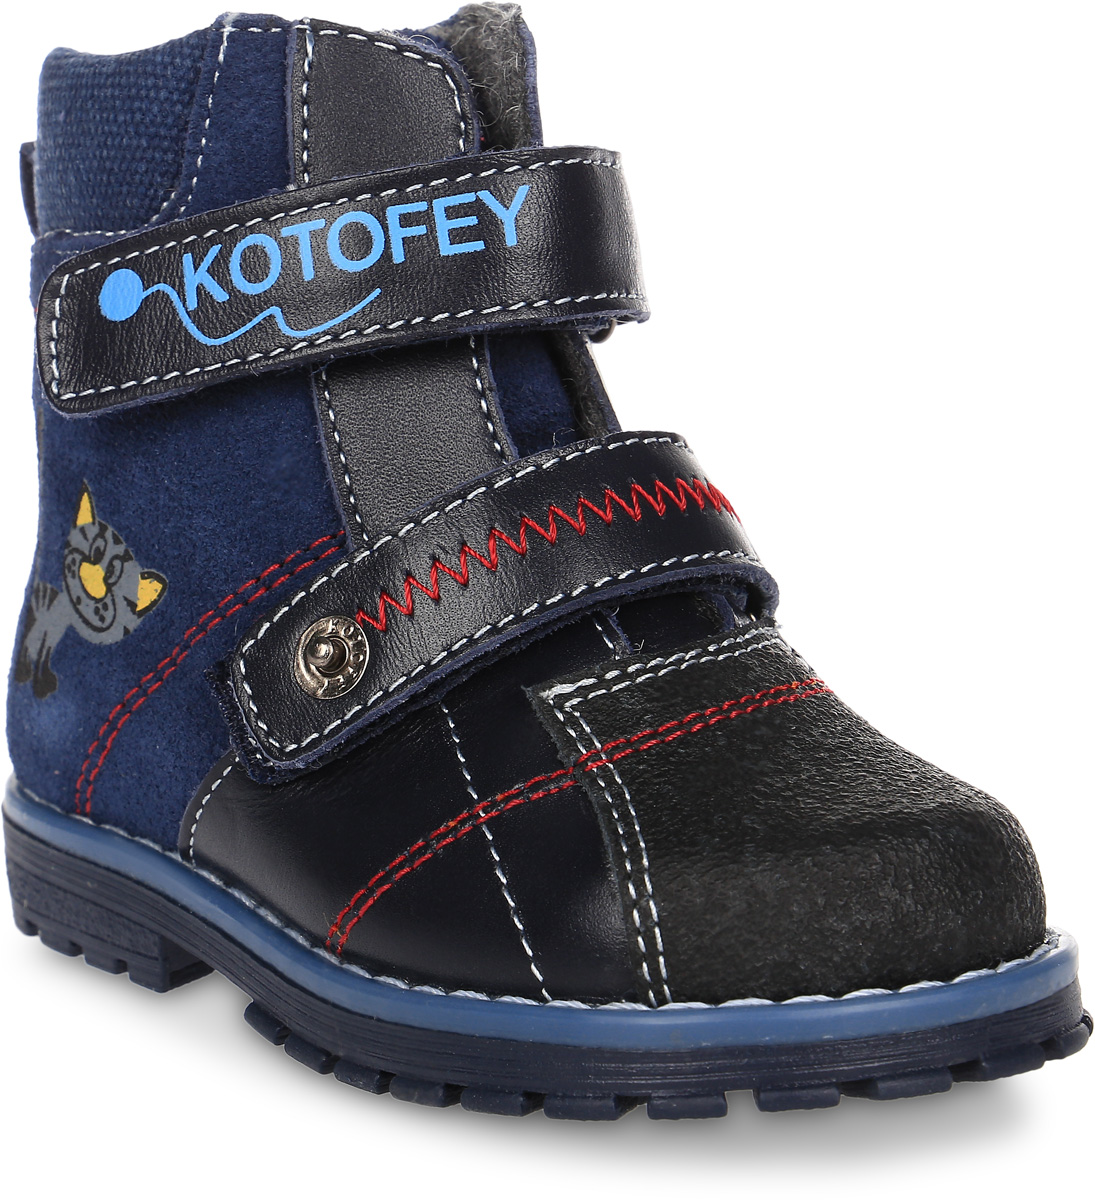 Ботинки для мальчика Котофей, цвет: синий. 152098-31. Размер 23